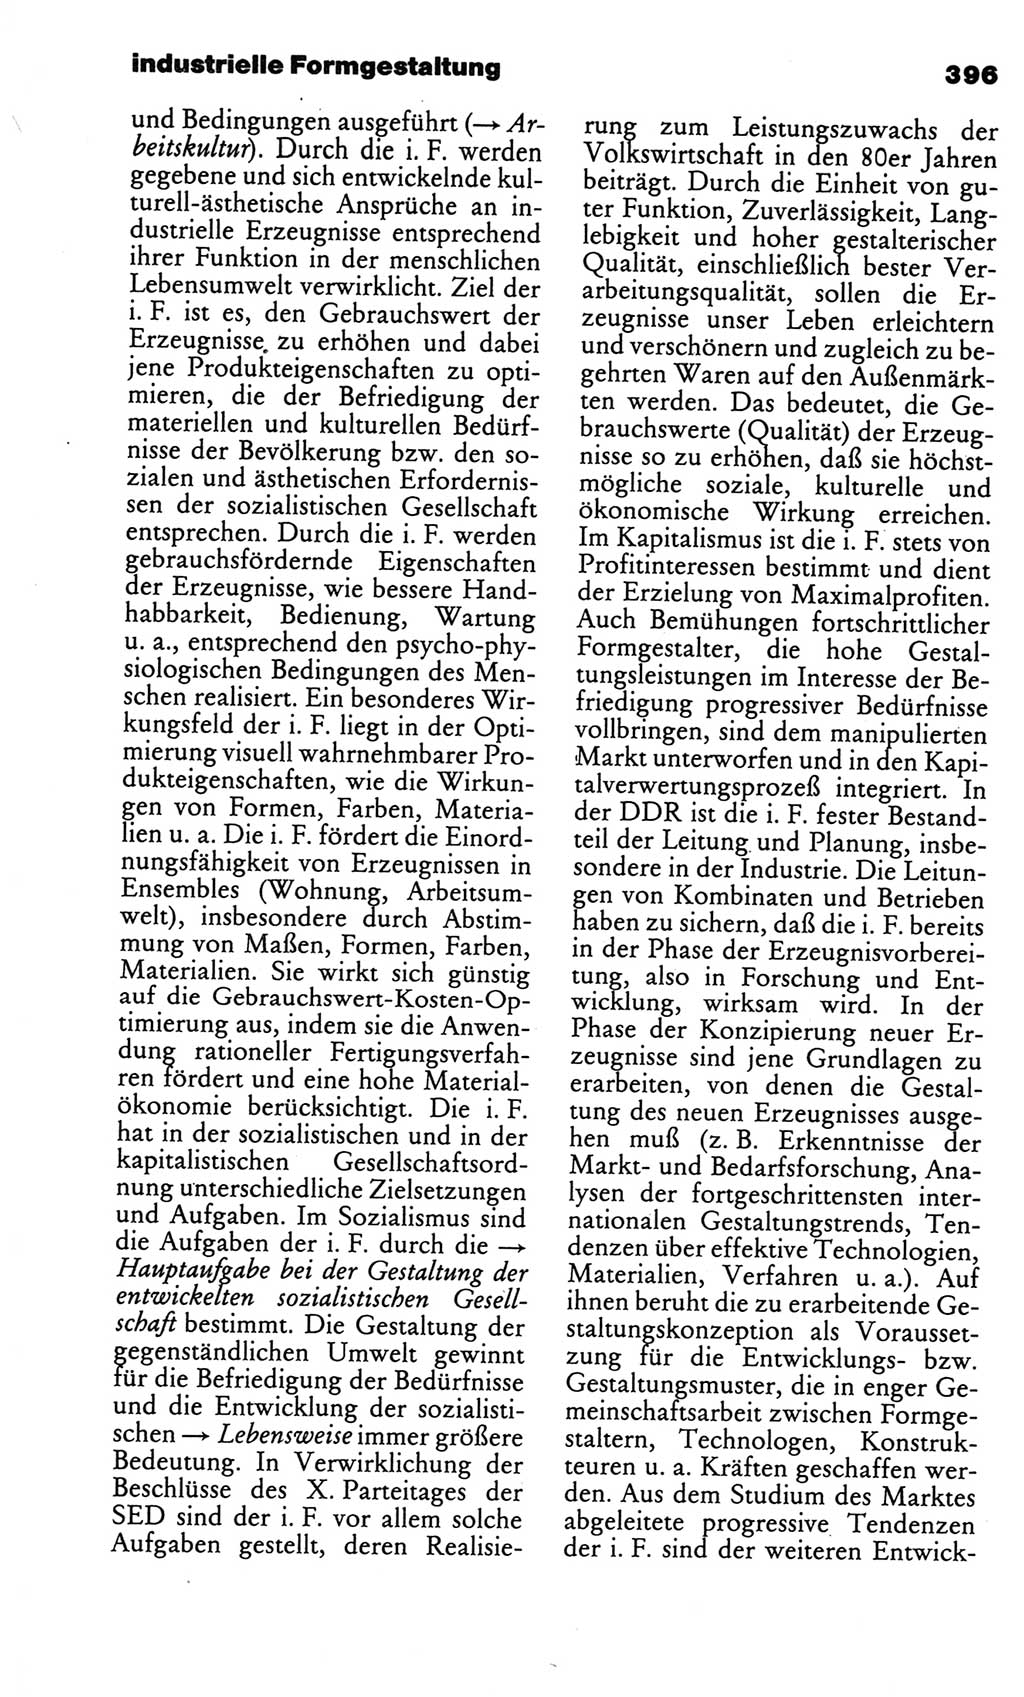 Kleines politisches Wörterbuch [Deutsche Demokratische Republik (DDR)] 1986, Seite 396 (Kl. pol. Wb. DDR 1986, S. 396)